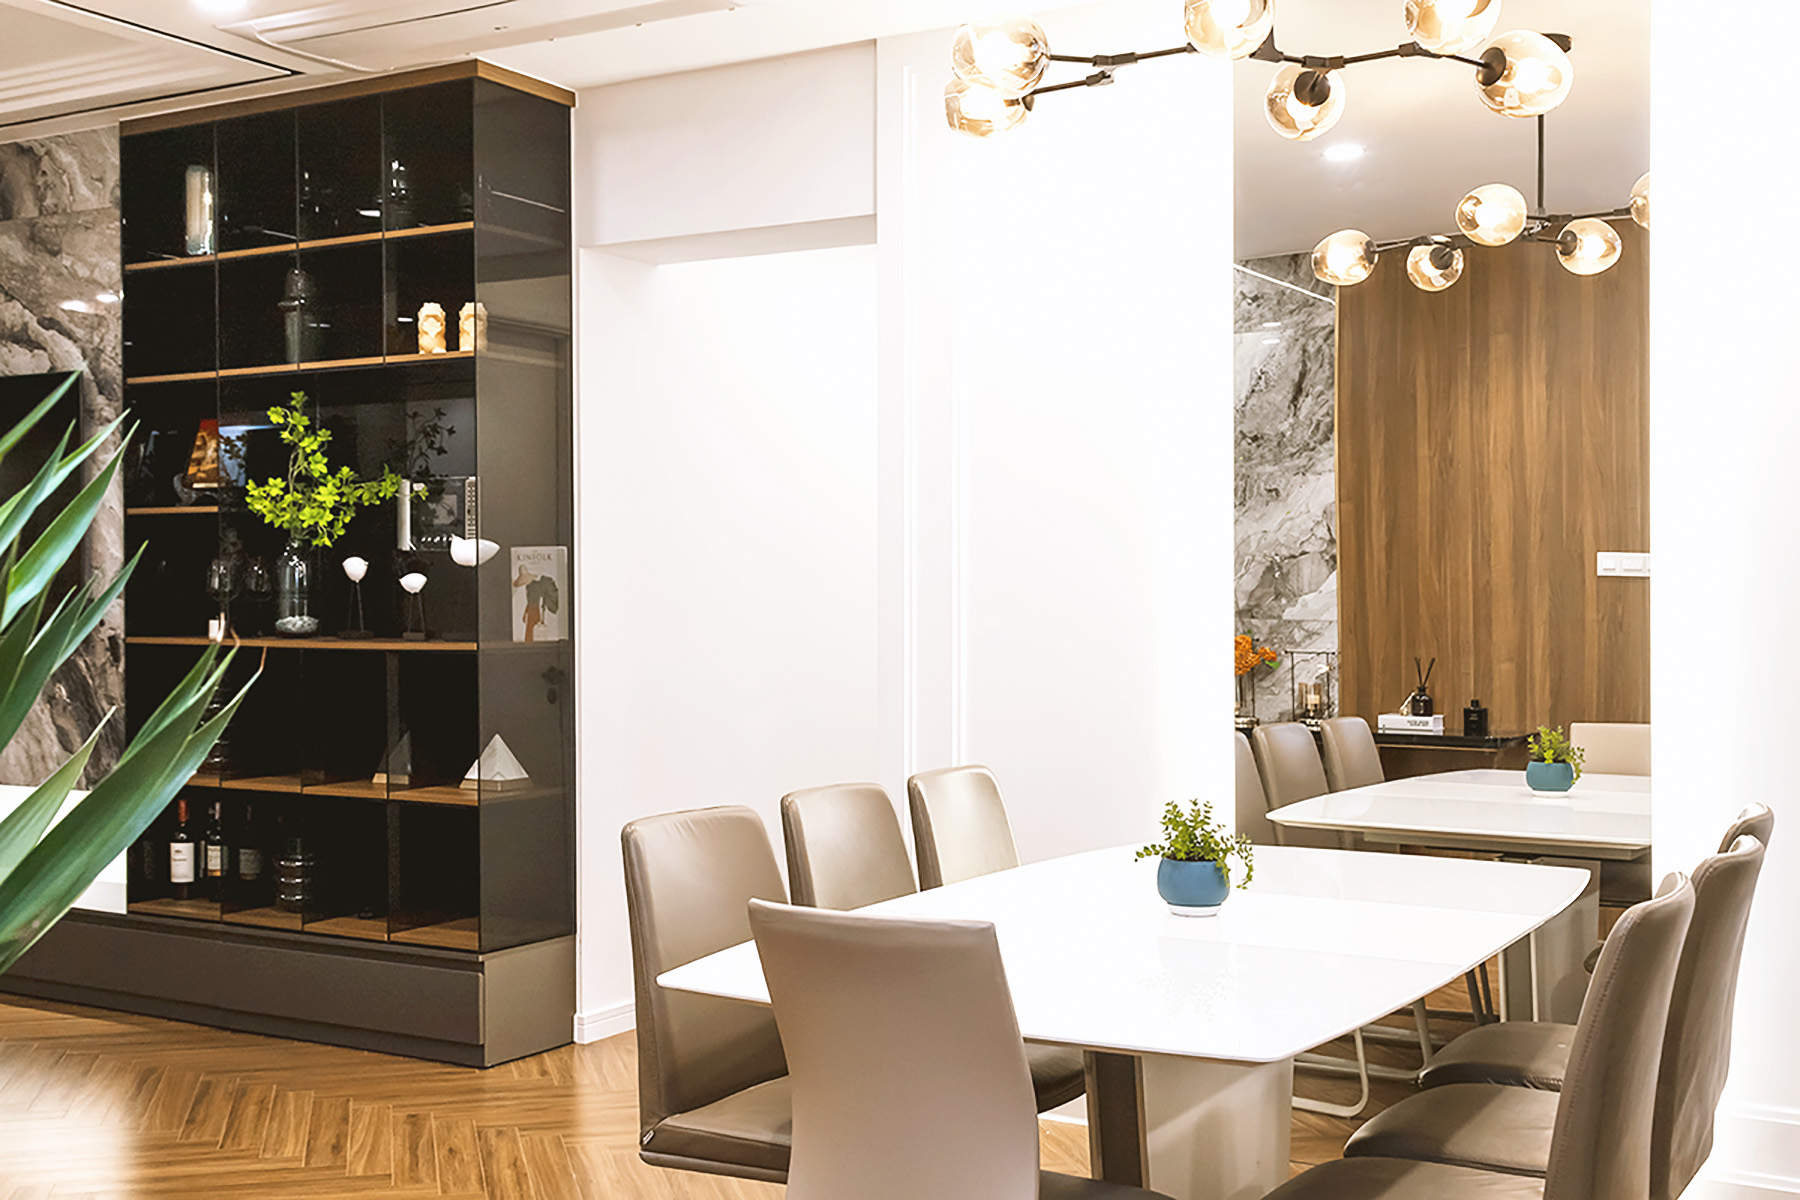 Phòng ăn, phong cách Hiện đại Modern, hoàn thiện nội thất, căn hộ Saigon Pearl Topaz 2